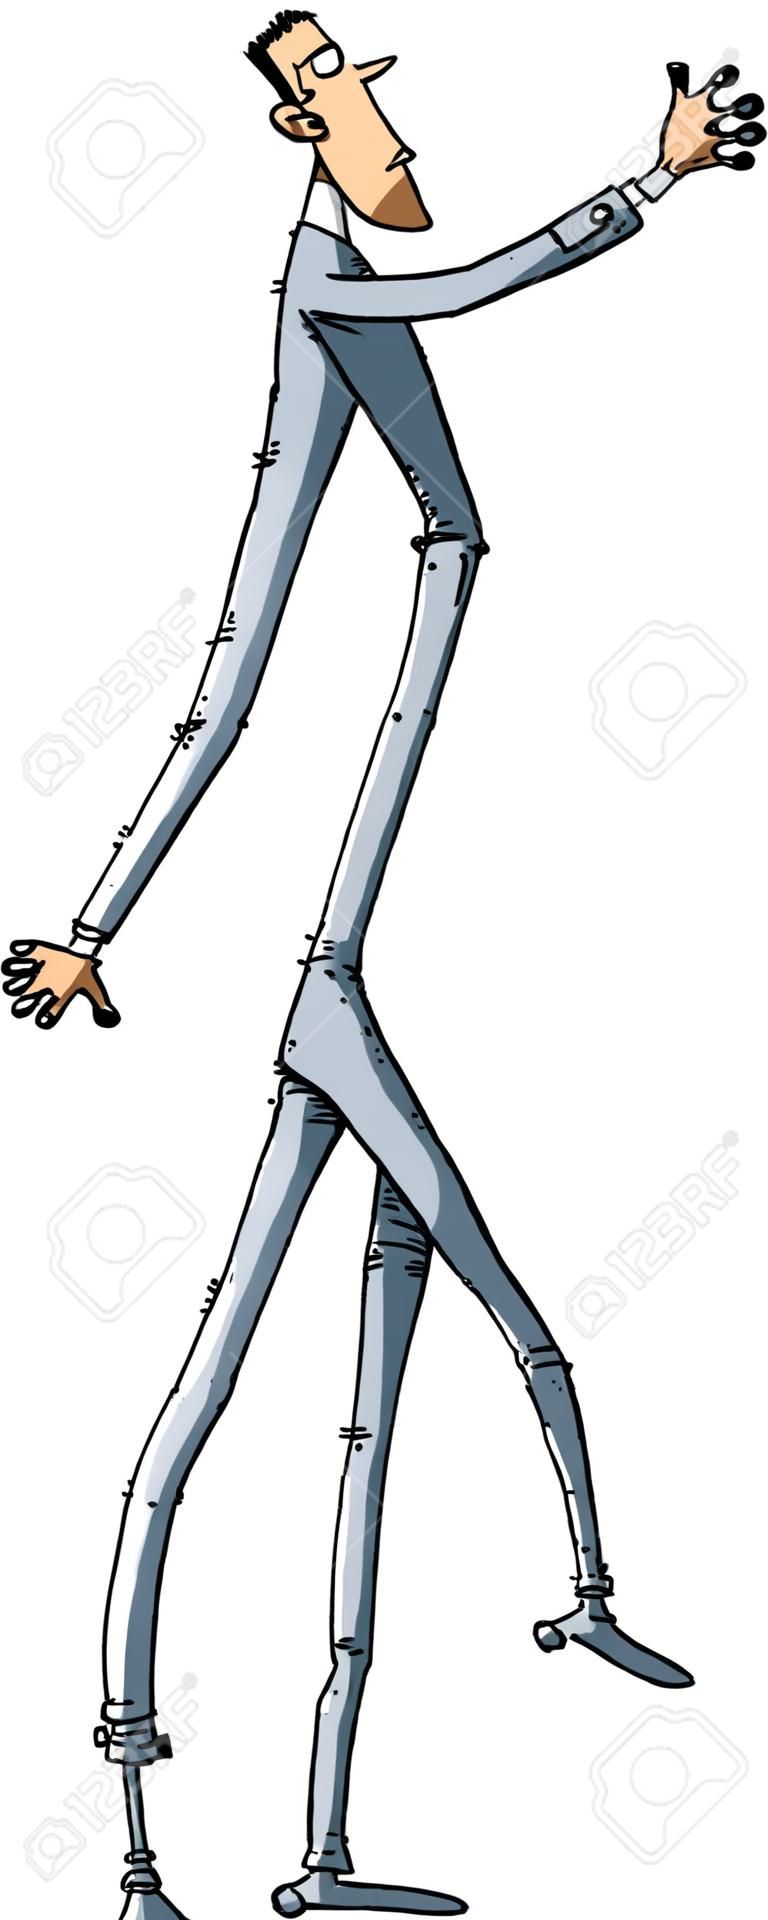 Un hombre de dibujos animados con las piernas muy largas.